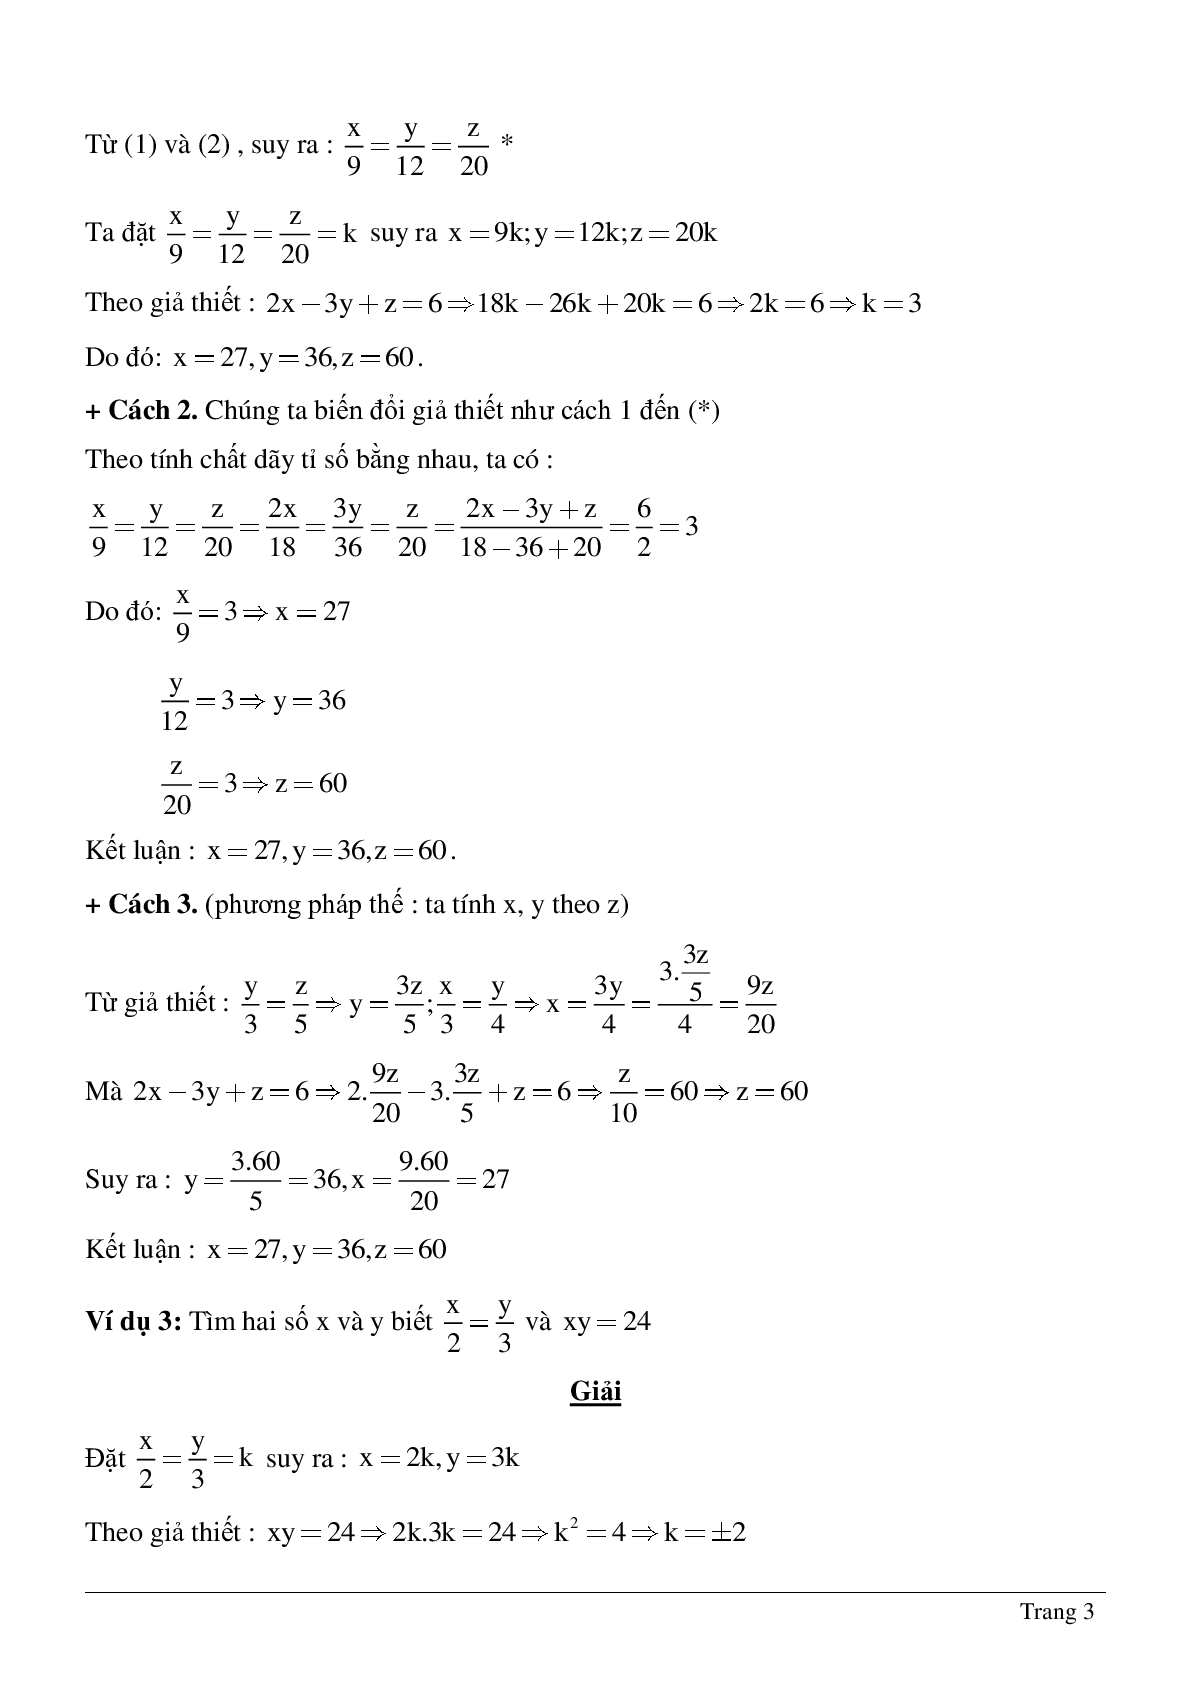 Bài tập chọn lọc về Tỉ lệ thức - Tính chất của dãy tỉ số bằng nhau có lời giải (trang 3)